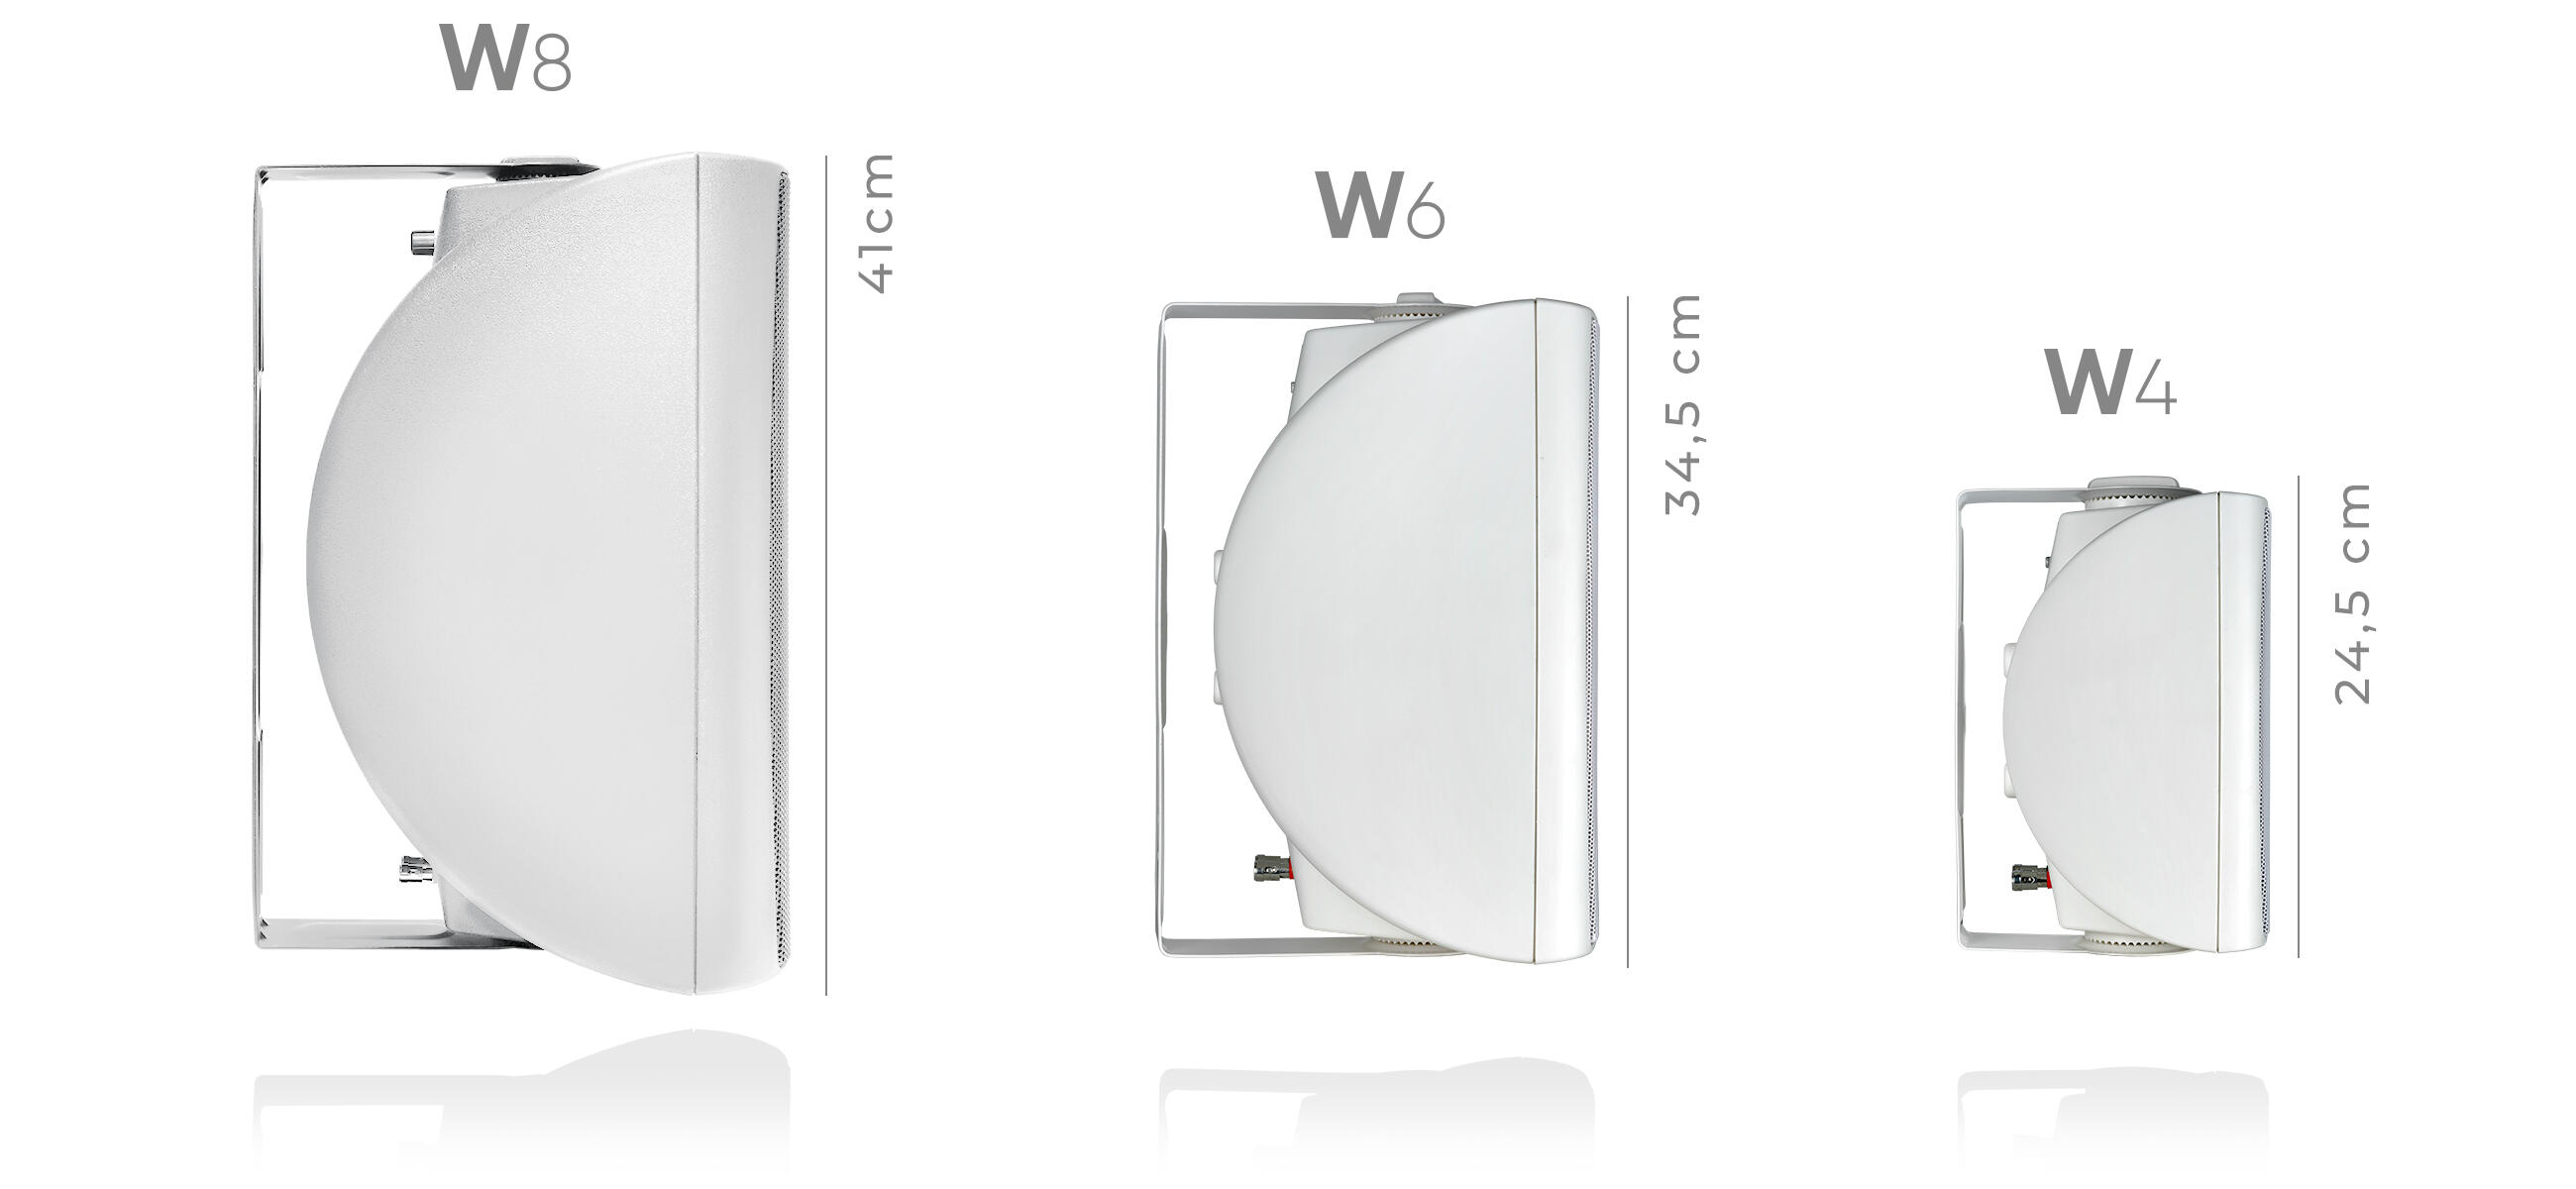 NEXT-Audiocom-W4w-size